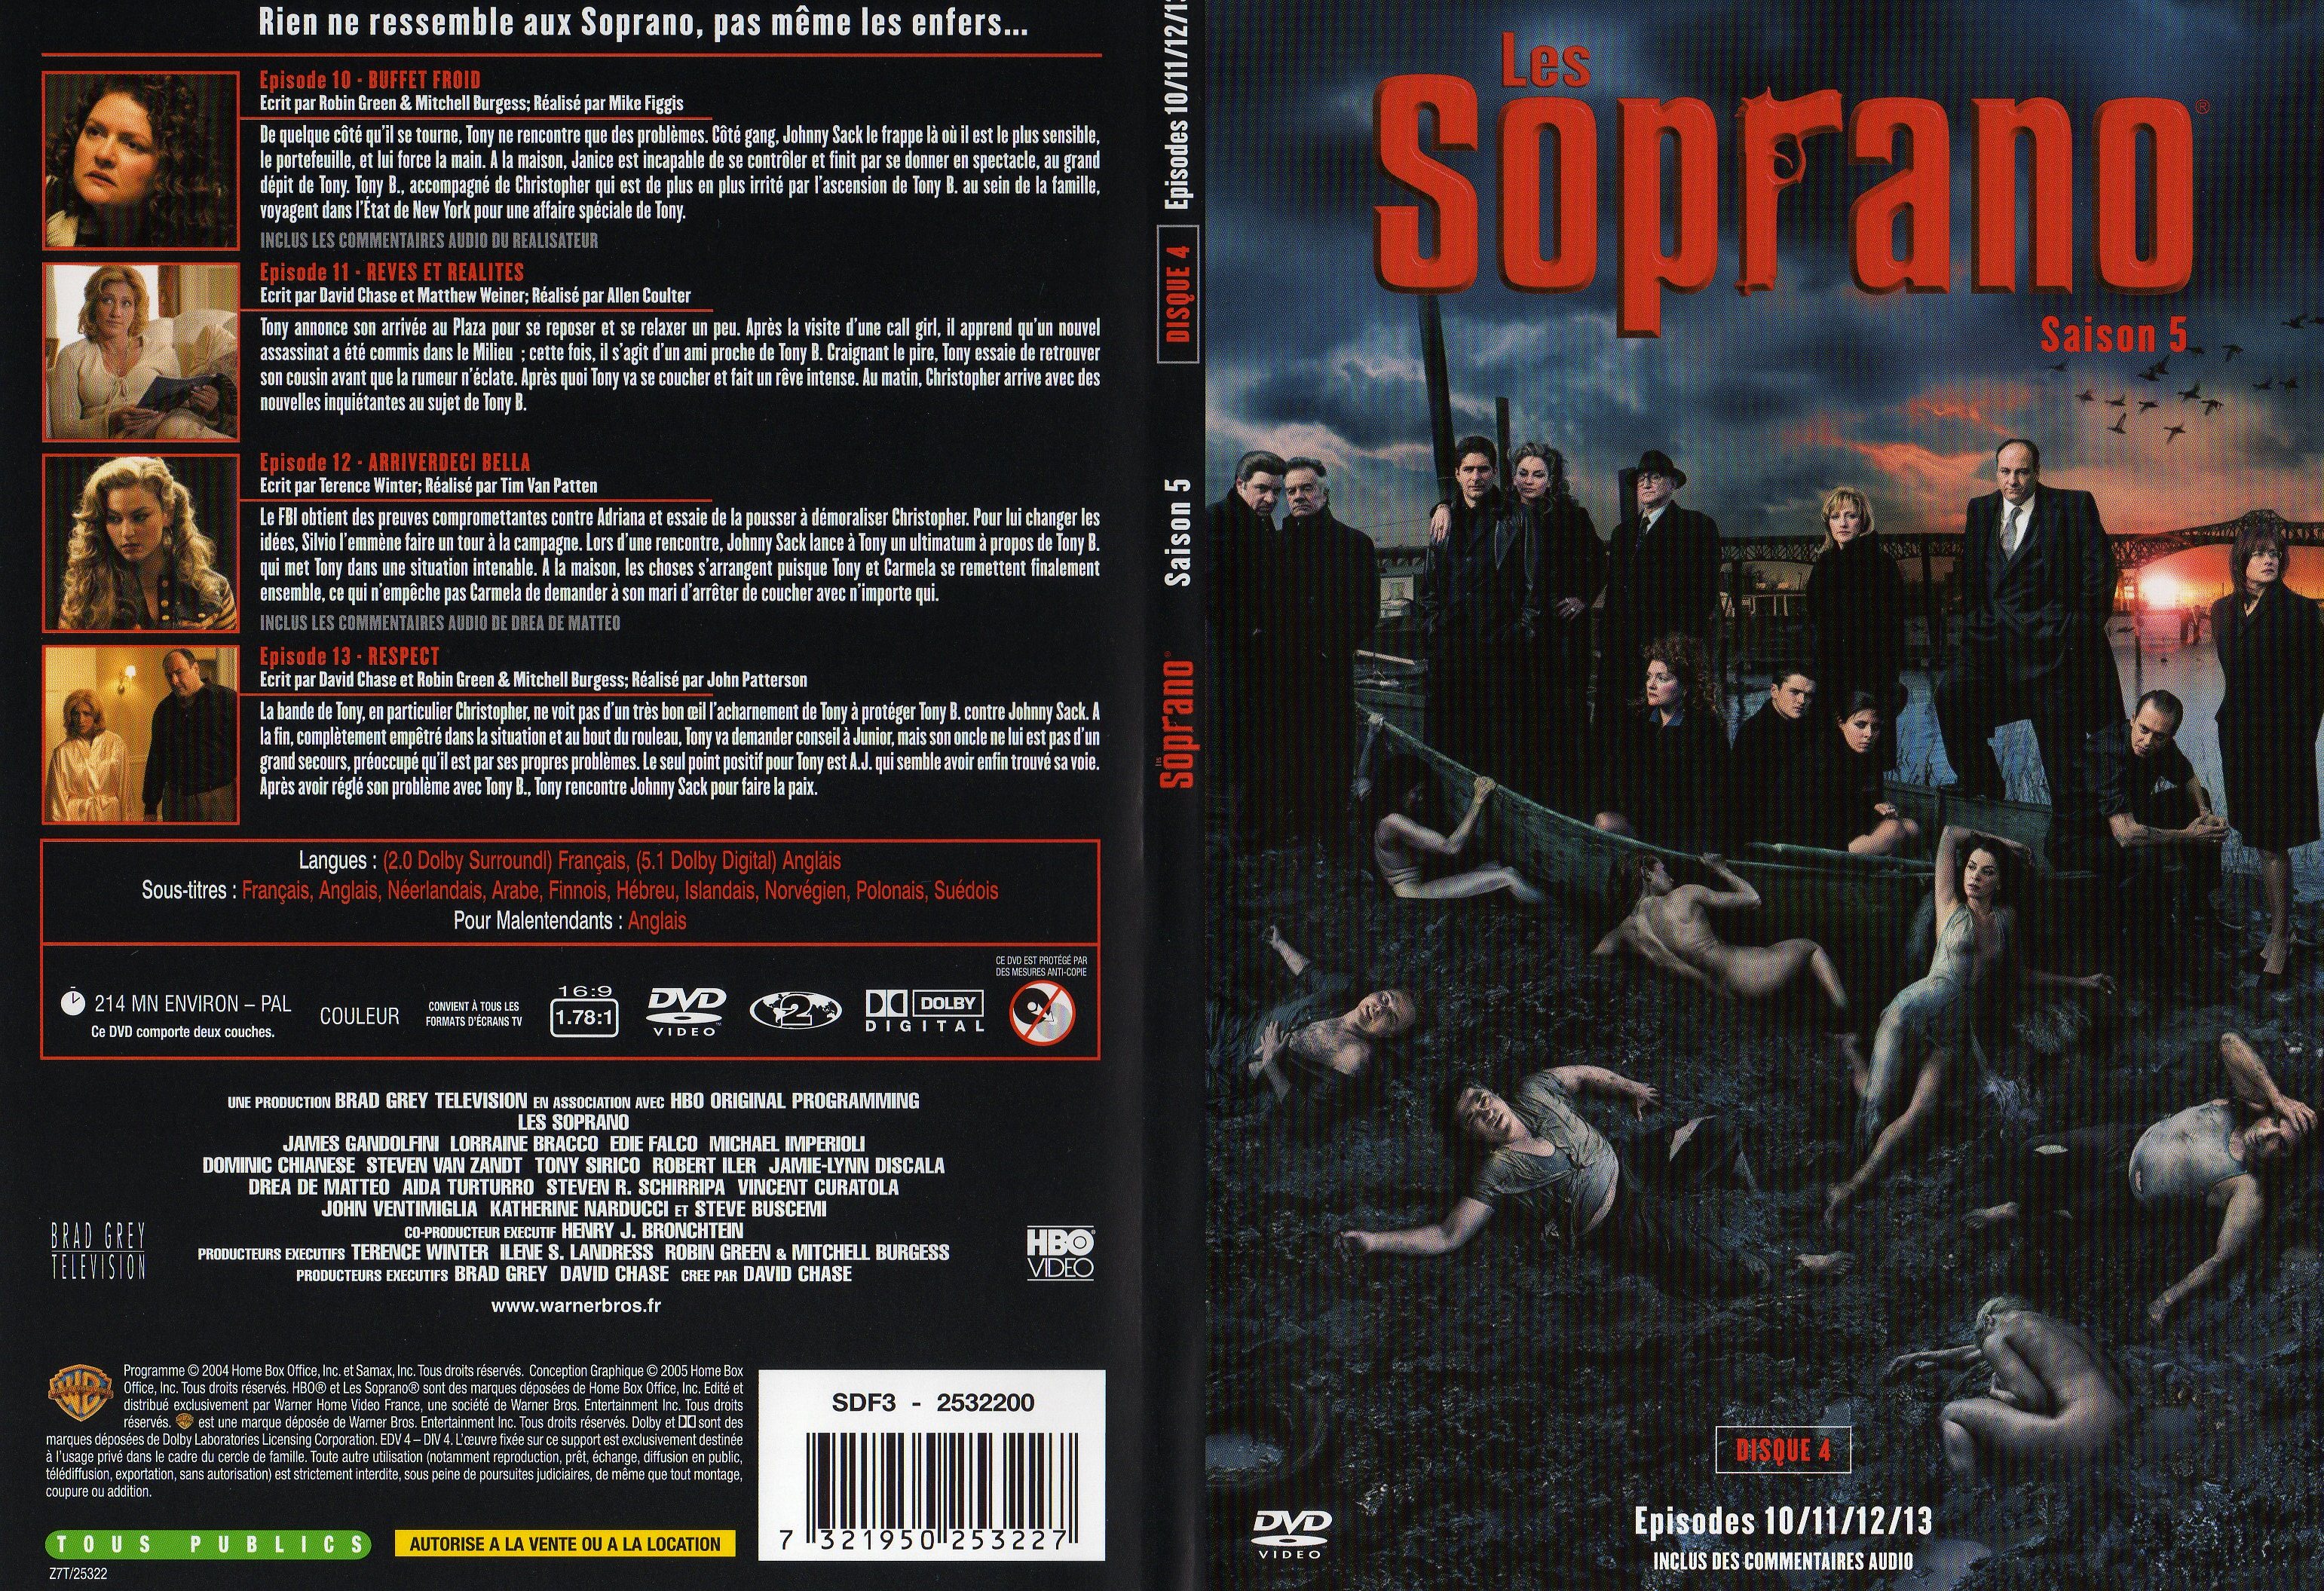 Jaquette DVD Les Soprano saison 5 DVD 4